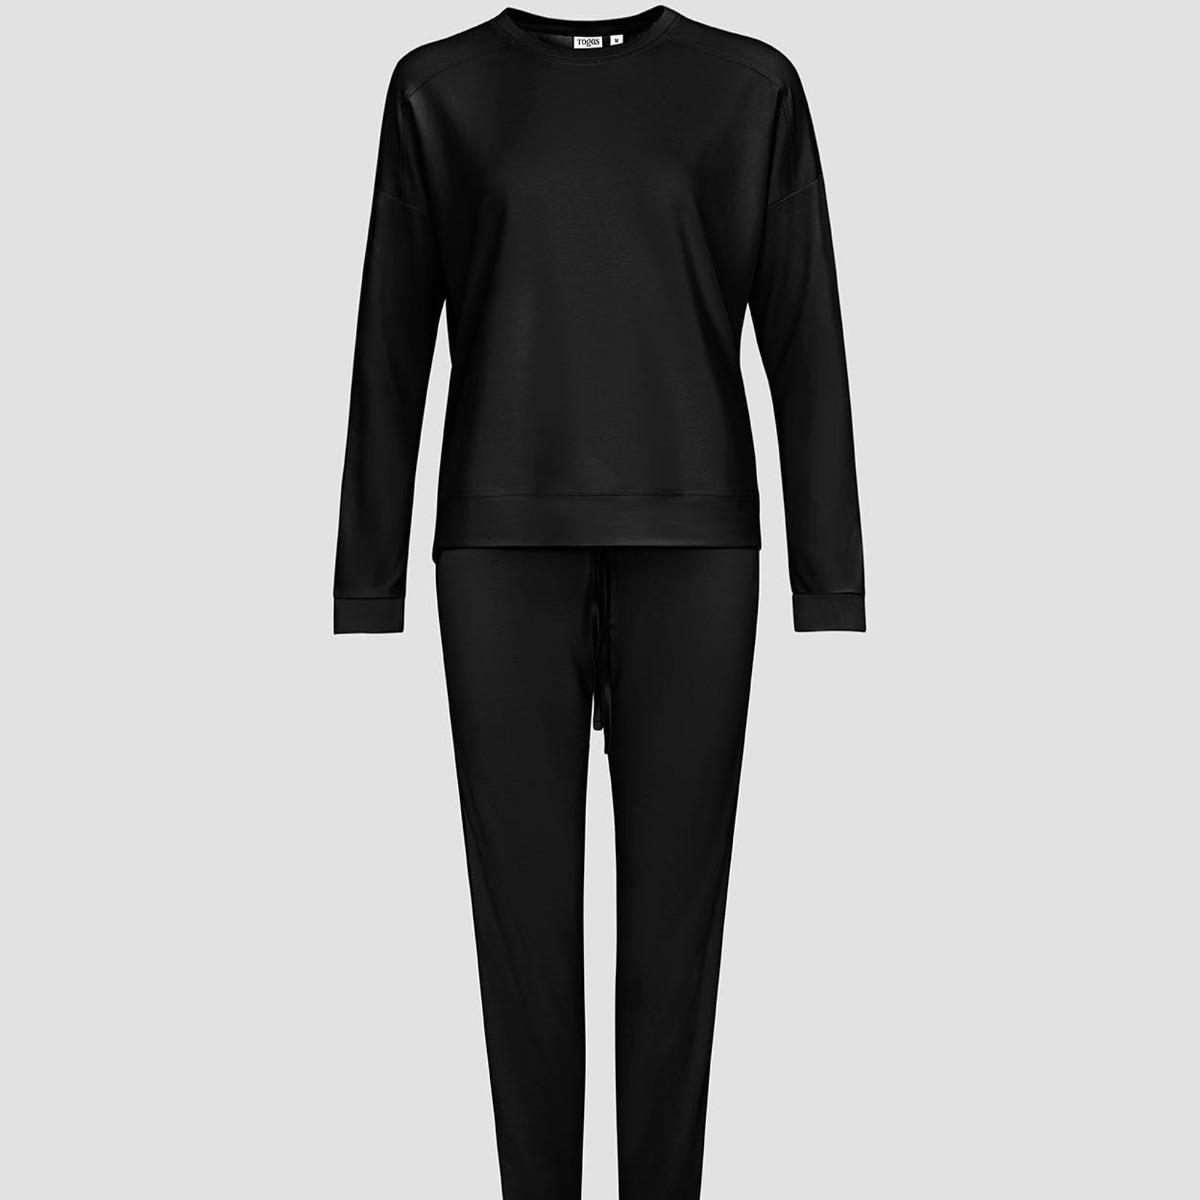 Женская пижама Togas Рене чёрная XS (42) пижама togas рене серая женская m 46